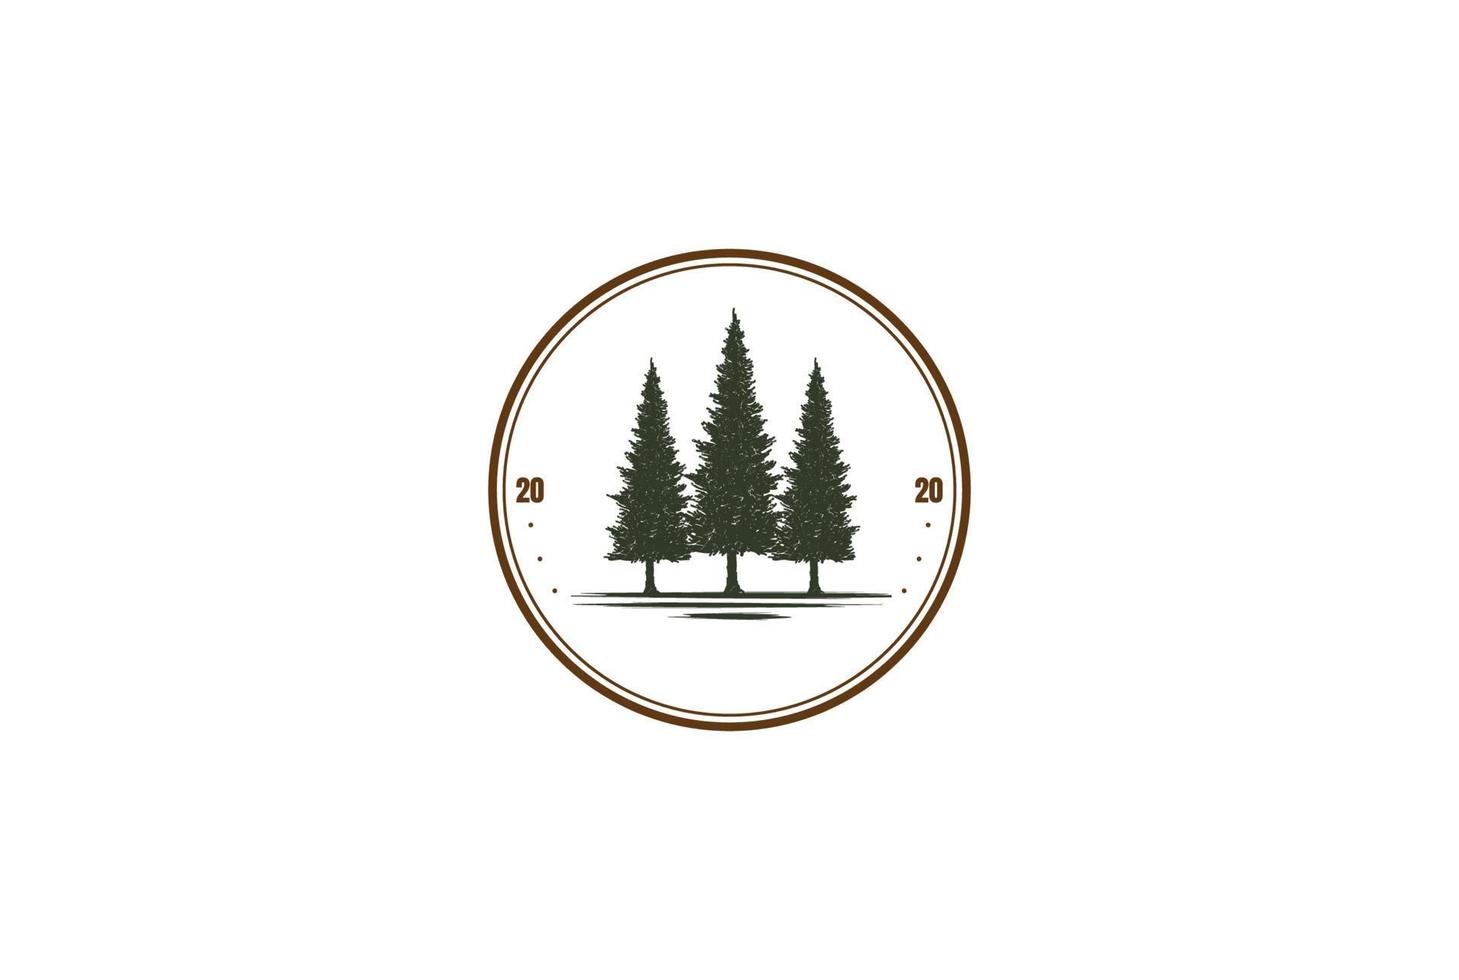 Rústico pino siempre verde cedro ciprés alerce conífera conífero abetos bosque insignia emblema logotipo diseño vector